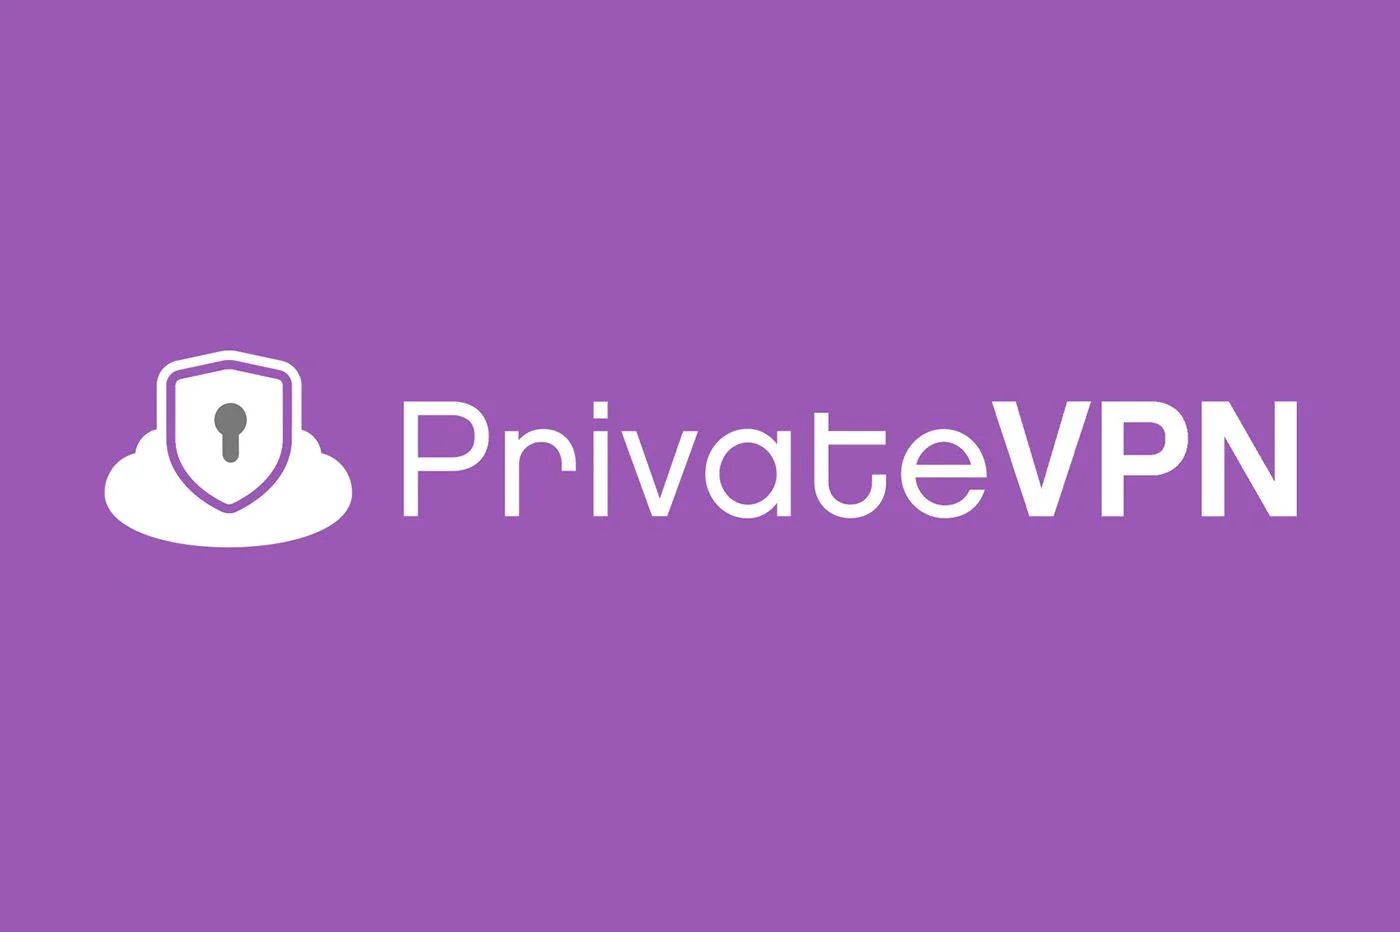 Privatevpn.com